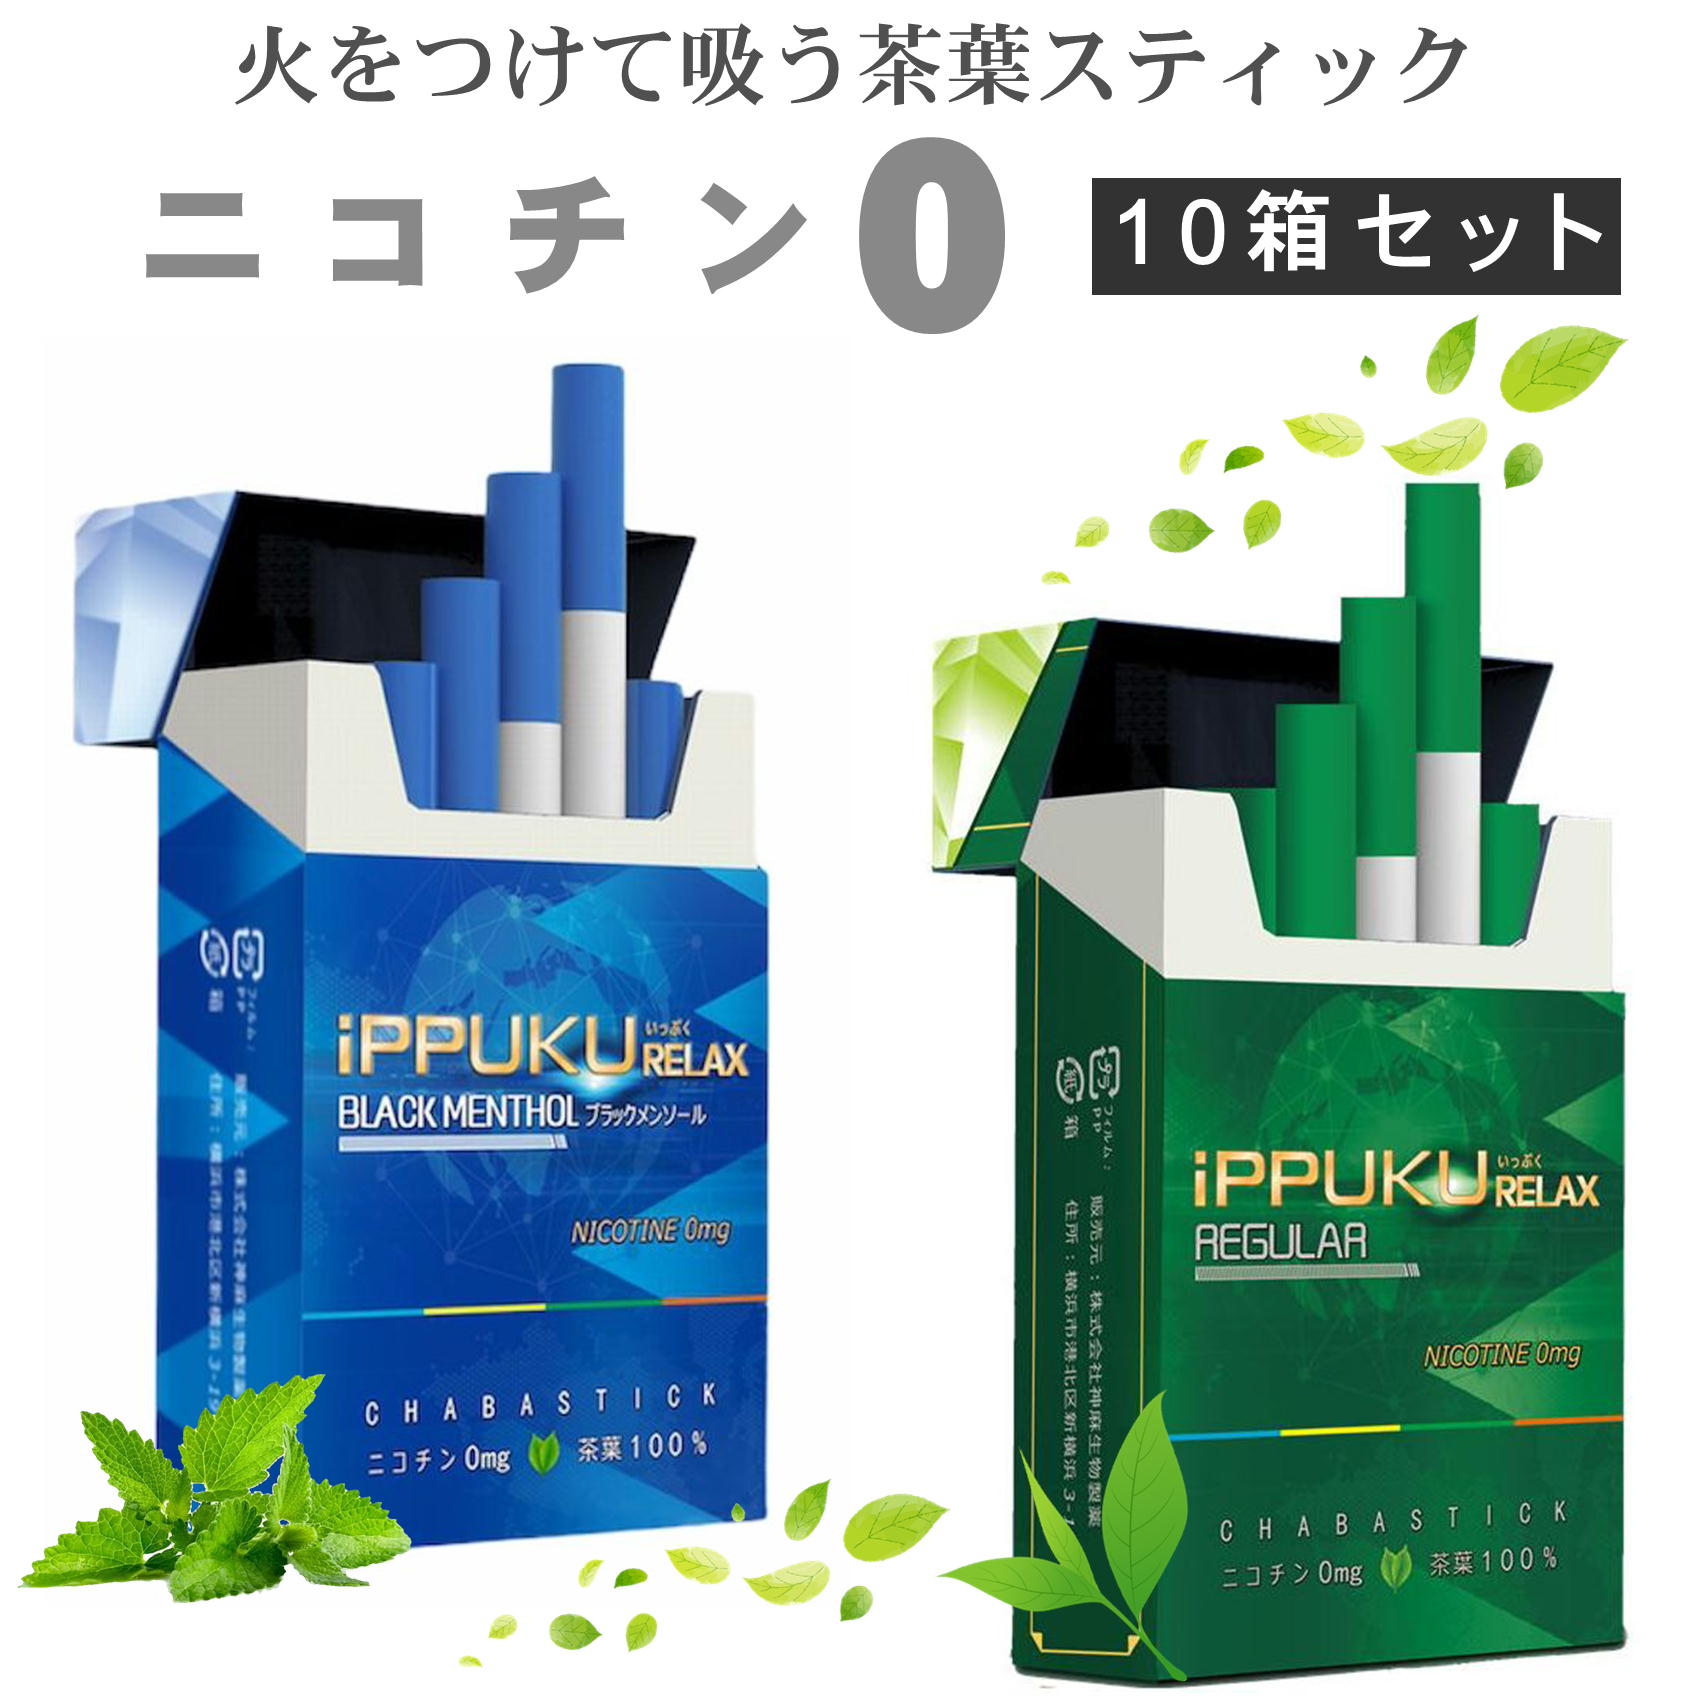 全2種類 iPPUKU RELAX 茶葉スティック 禁煙タバコ 禁煙グッズ 禁煙